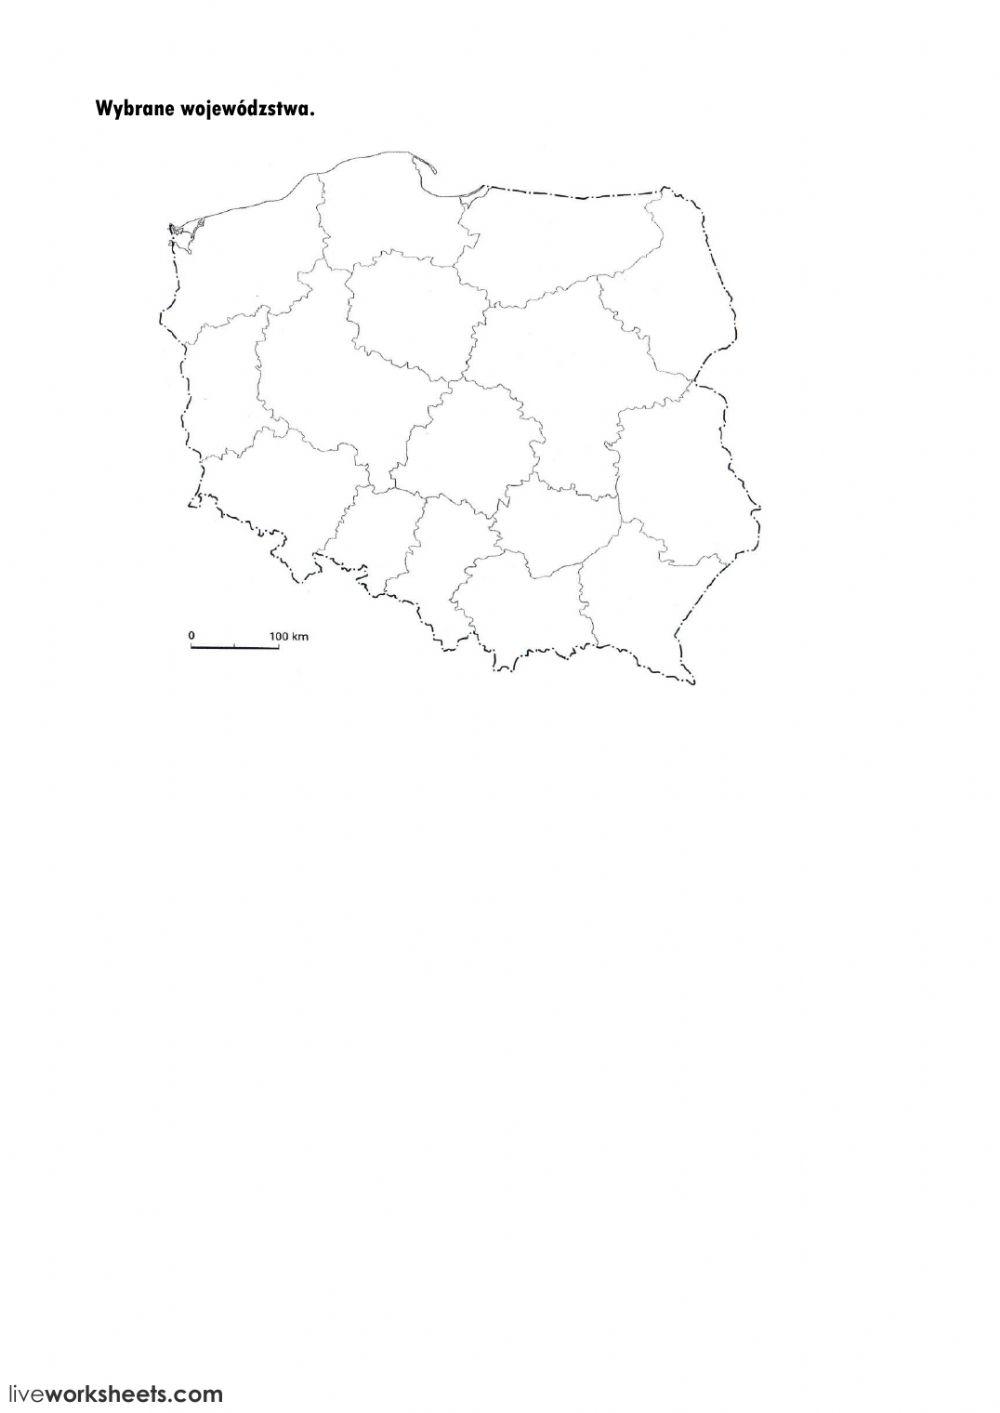 Mapa Polski- województwa